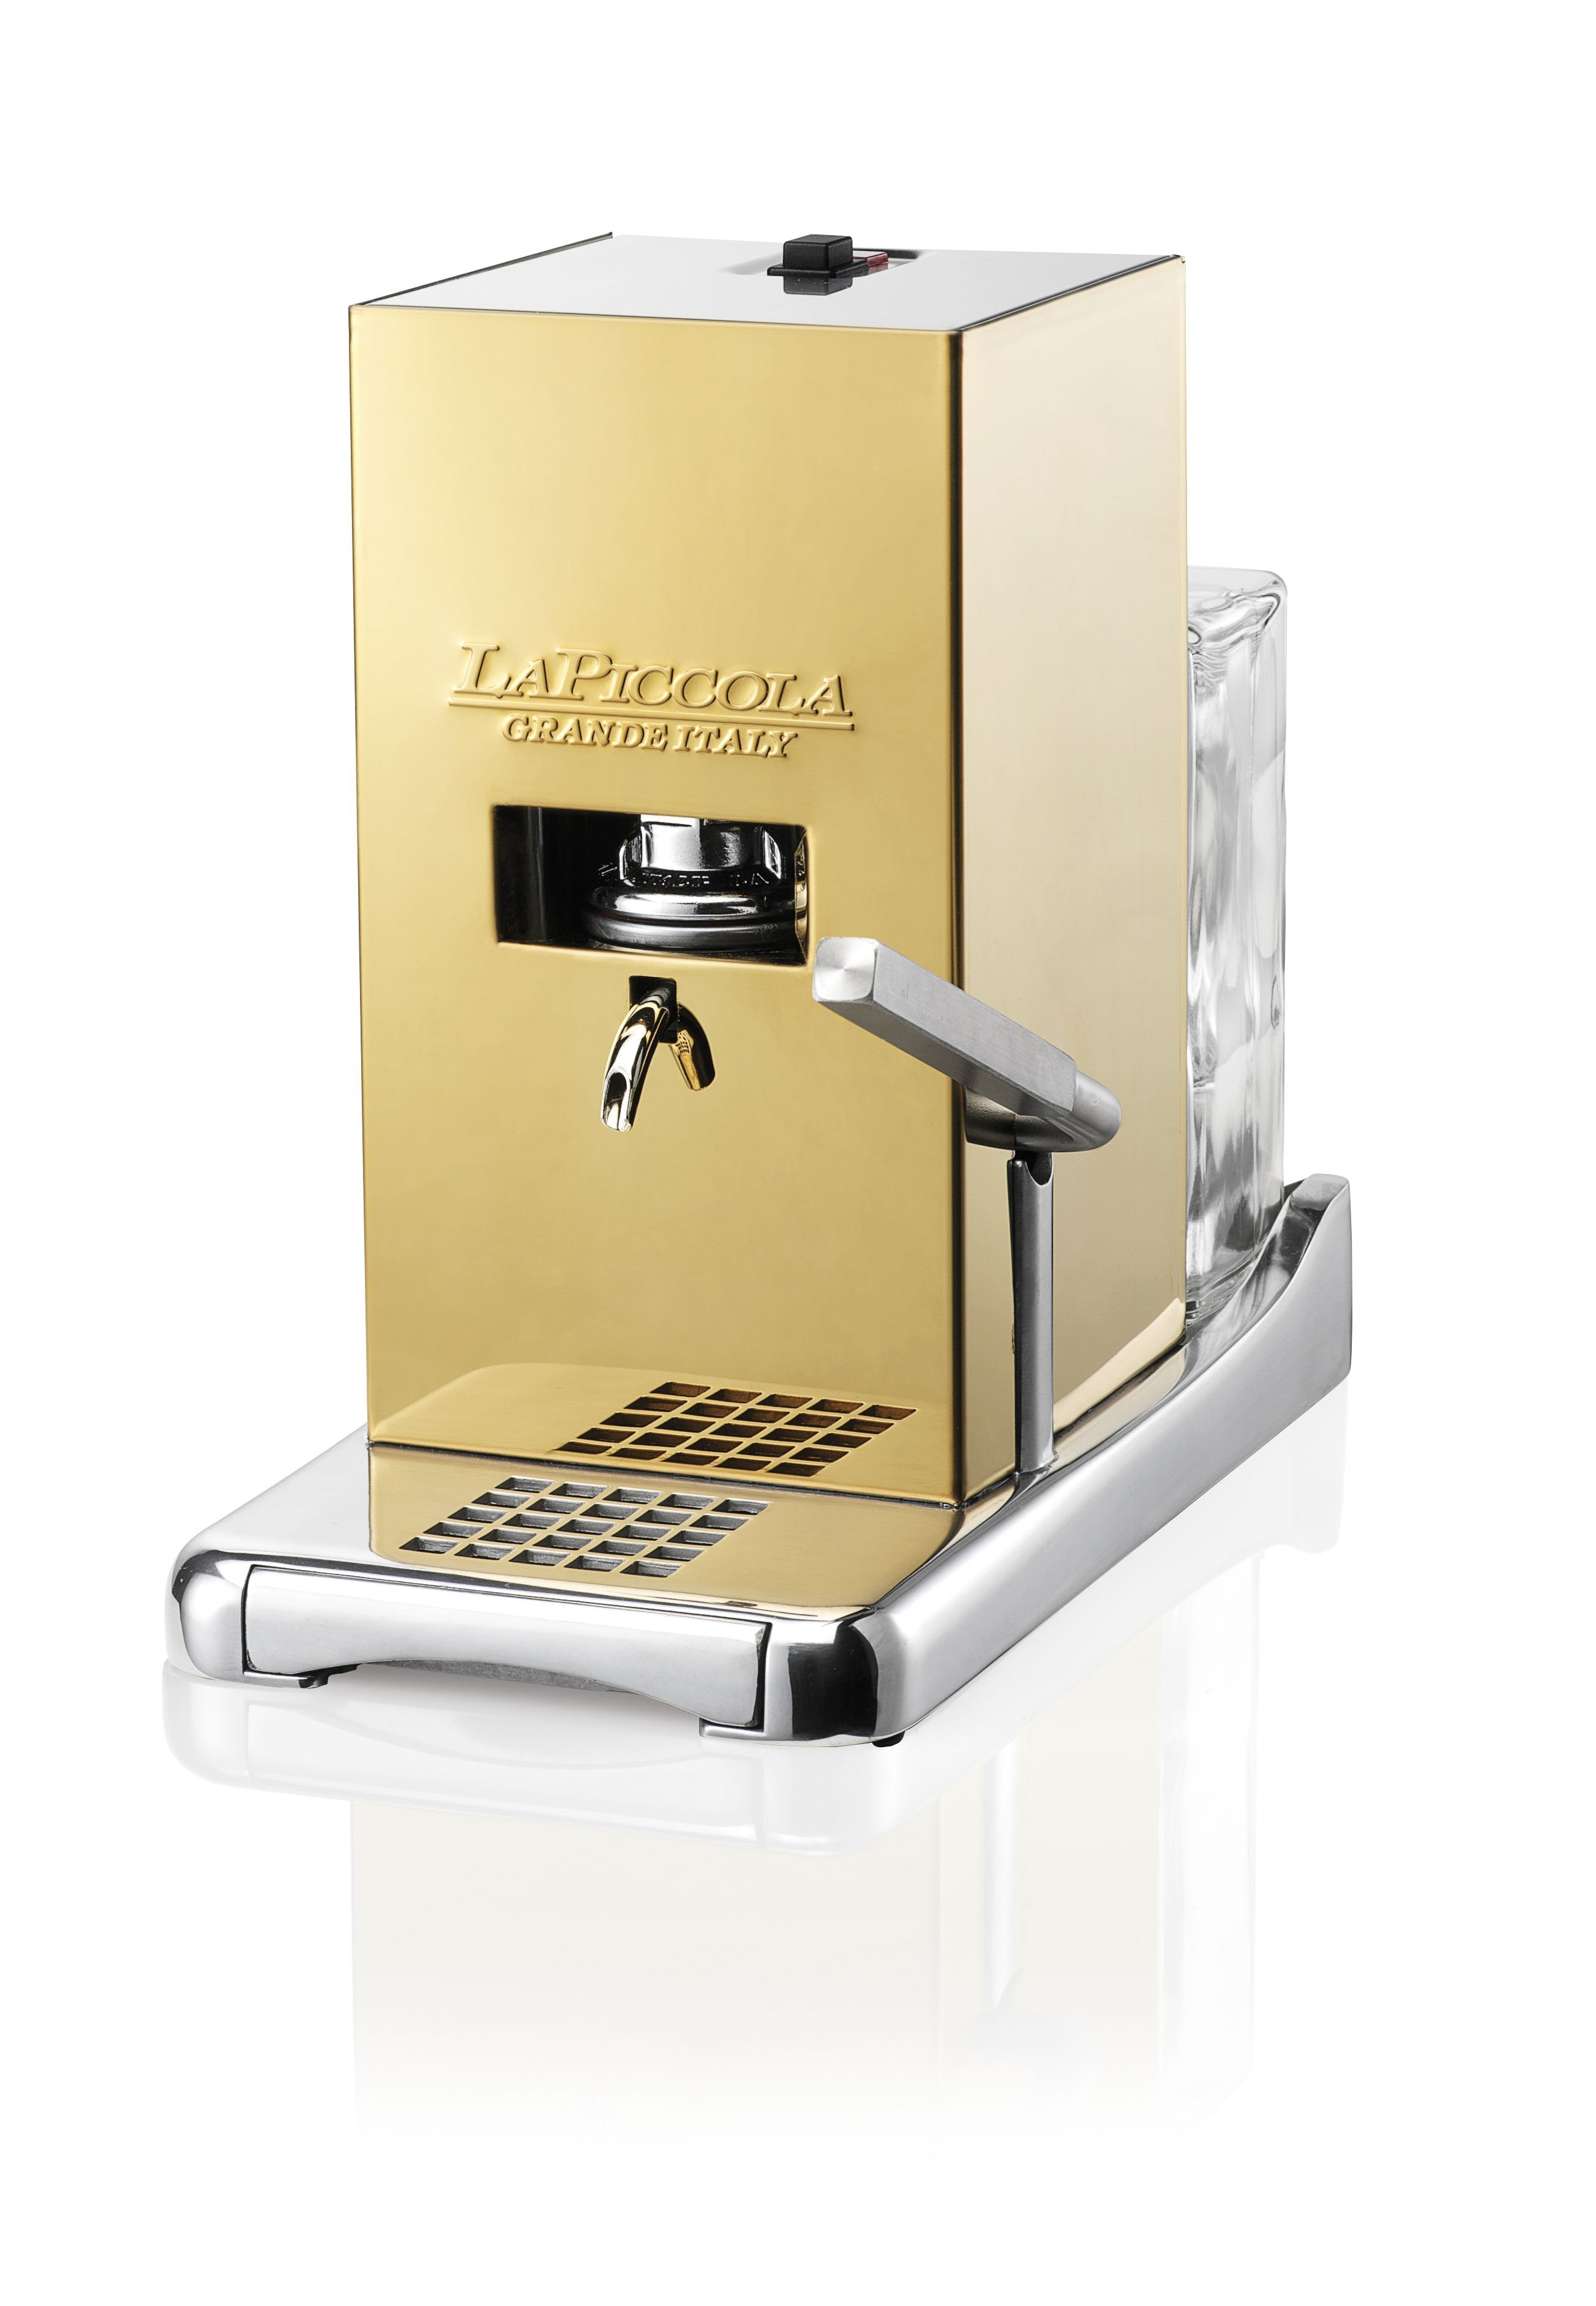 Macchine per caffè (599,00 €)